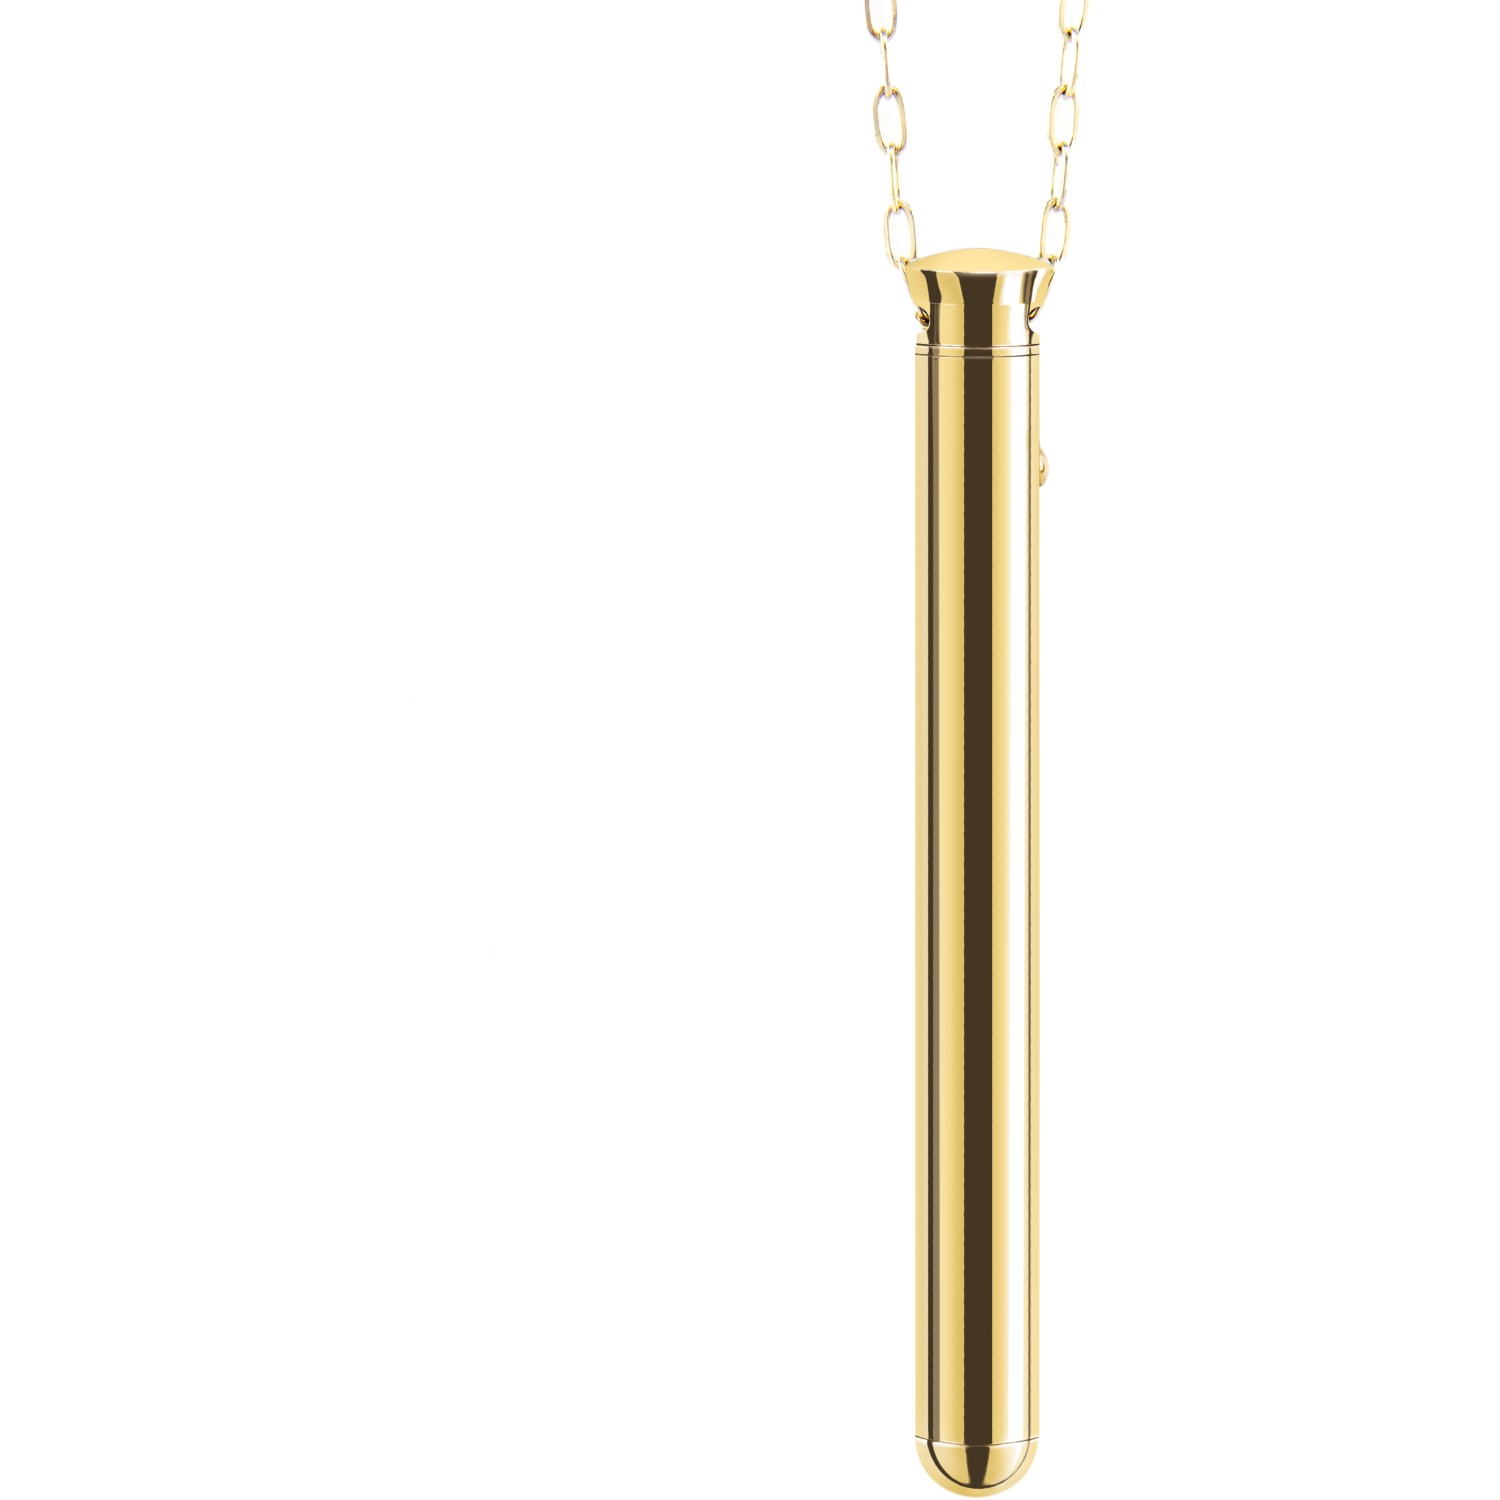 Элегантный вибромассажер-кулон из стали Vibrating Necklace Gold», le Wand LW-047-GD, из материала сталь, цвет золотой, длина 9.5 см., со скидкой